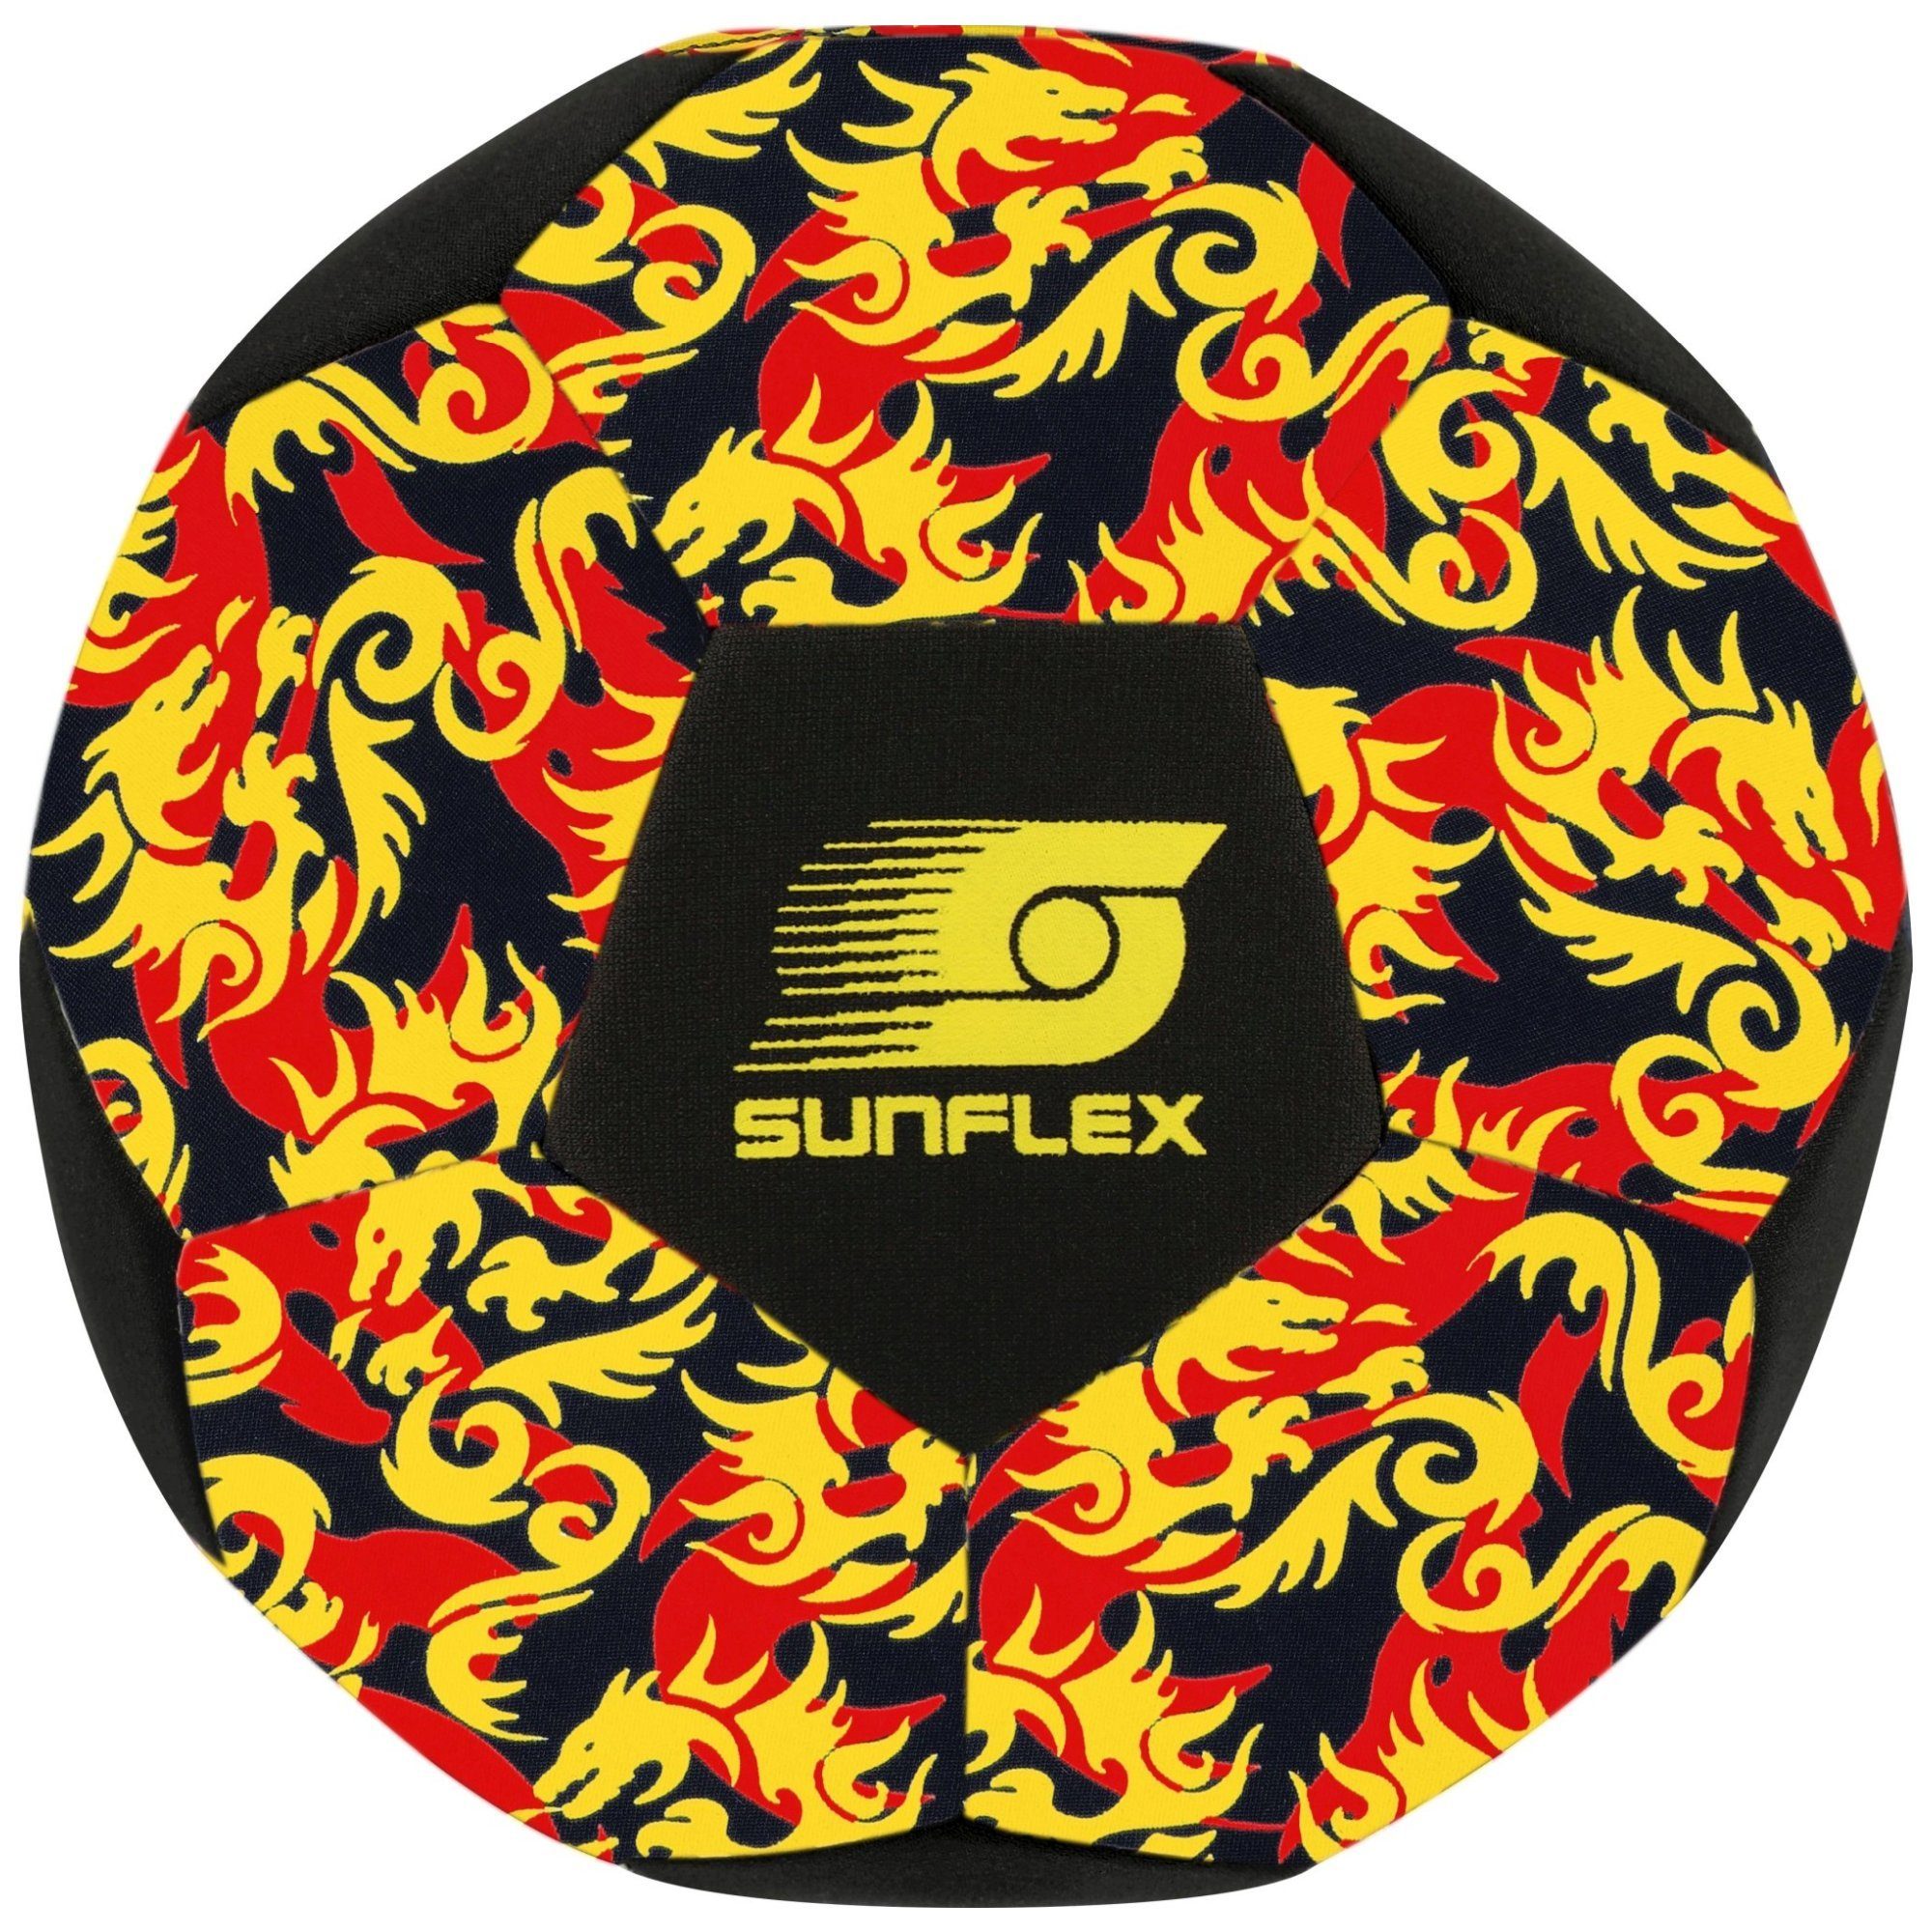 Sunflex Fußball sunflex Fußball Glow Flames